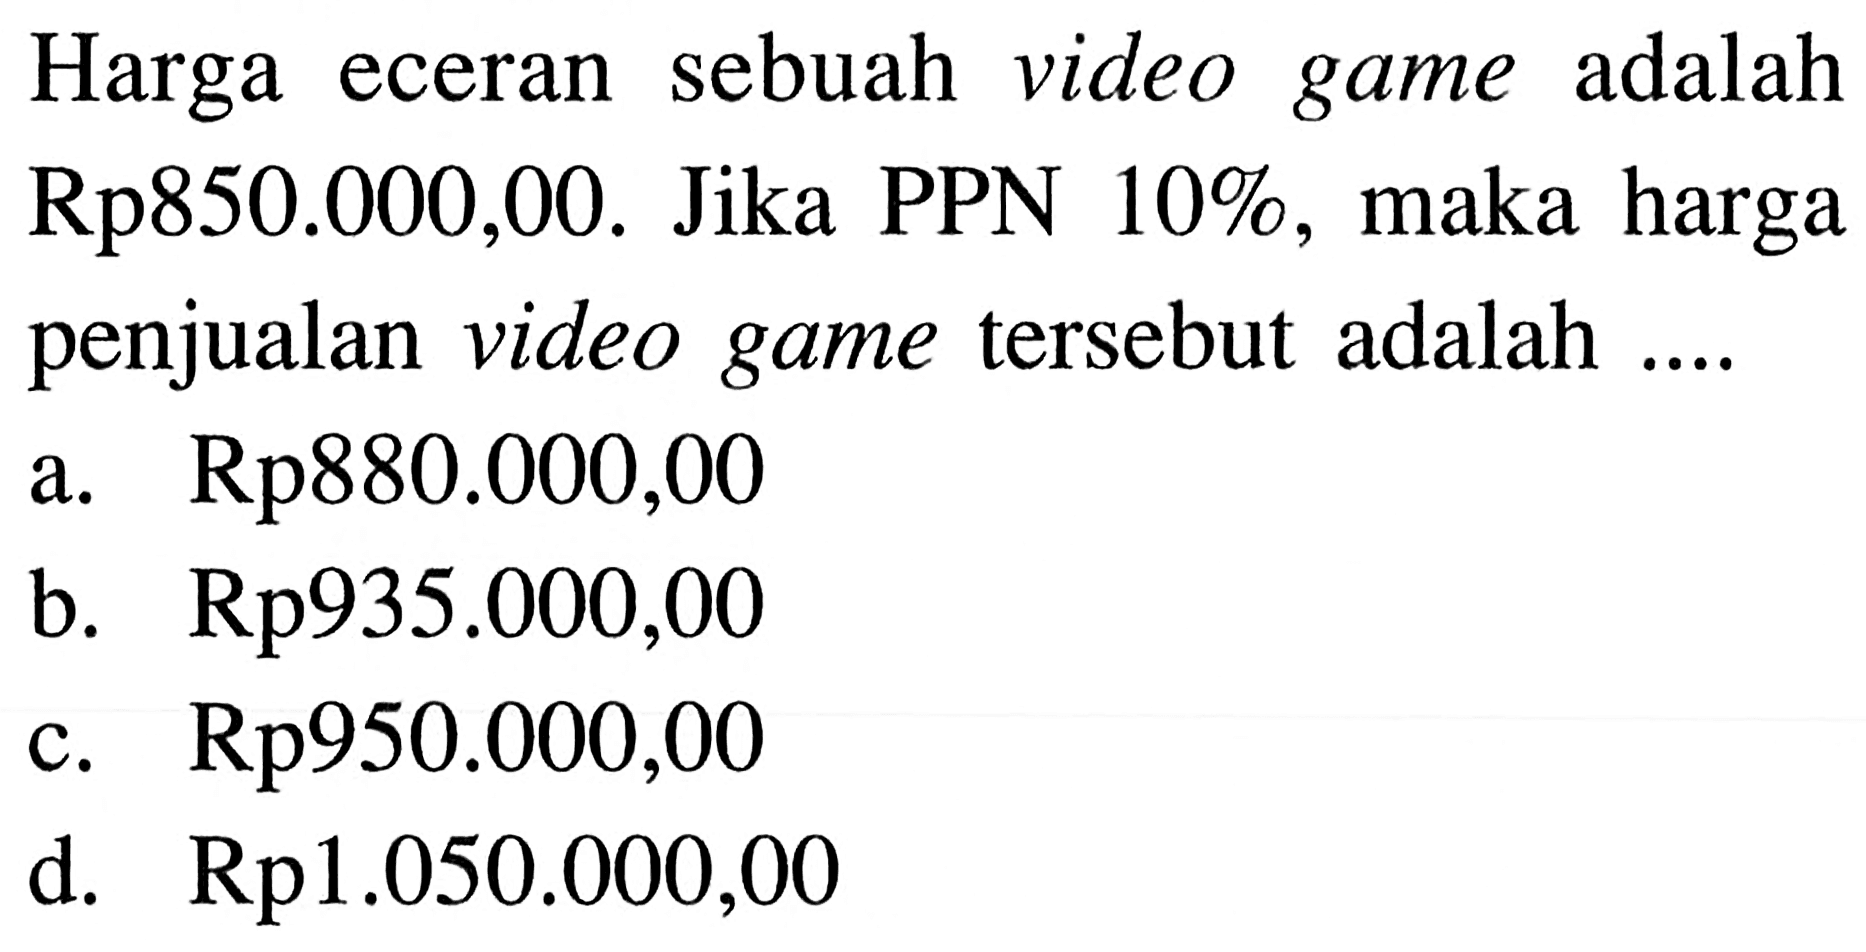 Harga eceran sebuah video game adalah Rp850.000,00. Jika PPN 10%, maka harga penjualan video game tersebut adalah ....